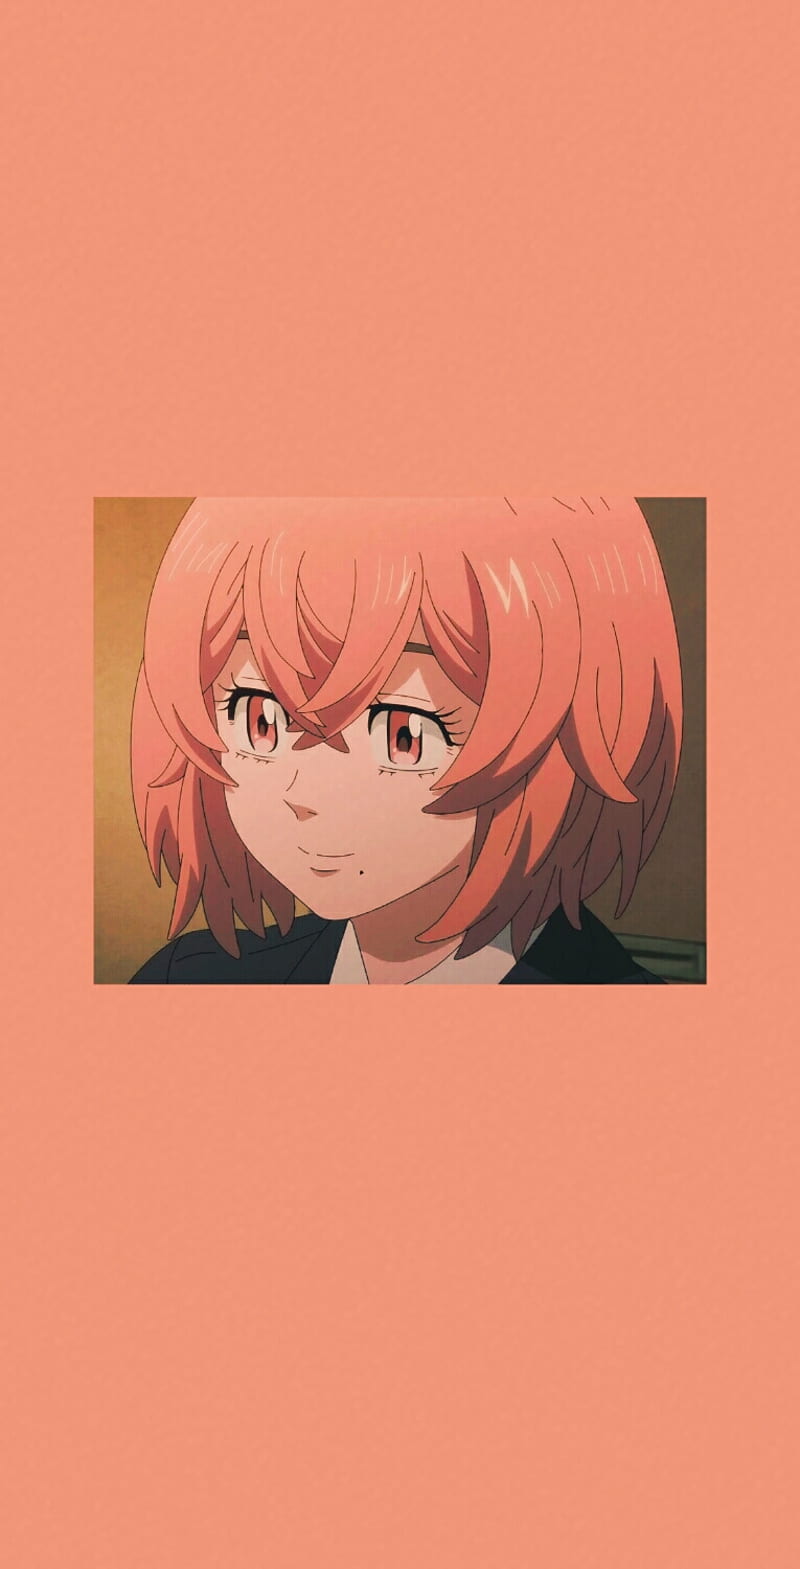 Hina-chan là một nhân vật vô cùng dễ thương và thu hút trong Tokyo Revengers. Hình ảnh của cô ấy sẽ khiến bạn cuồng phát muốn xem để tìm hiểu những câu chuyện tình cảm đầy xúc động xảy ra trong anime.